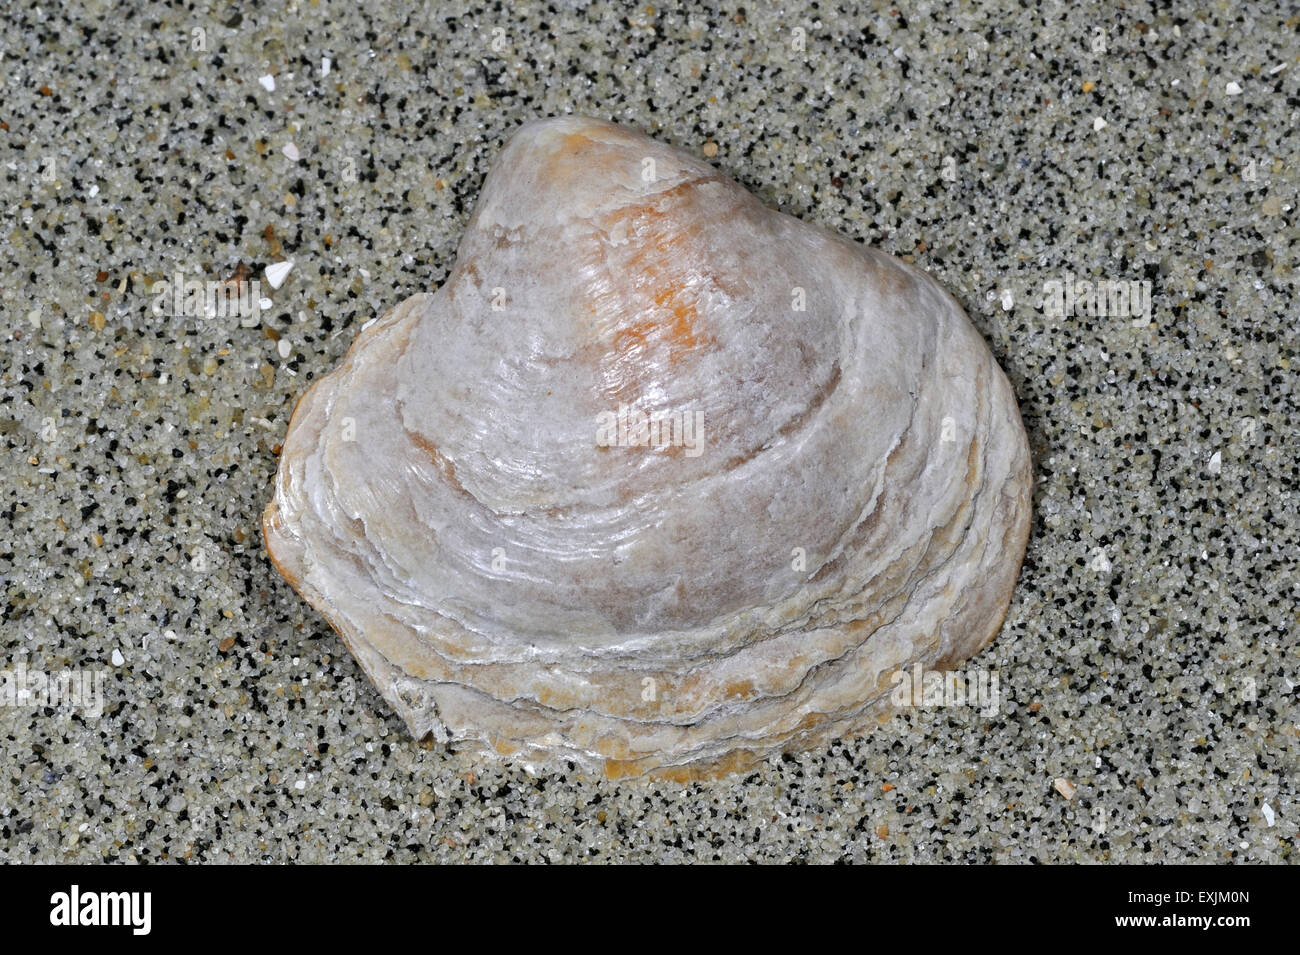 Saddle oyster / Jingle shell (Anomia ephippium) washed on beach Stock Photo